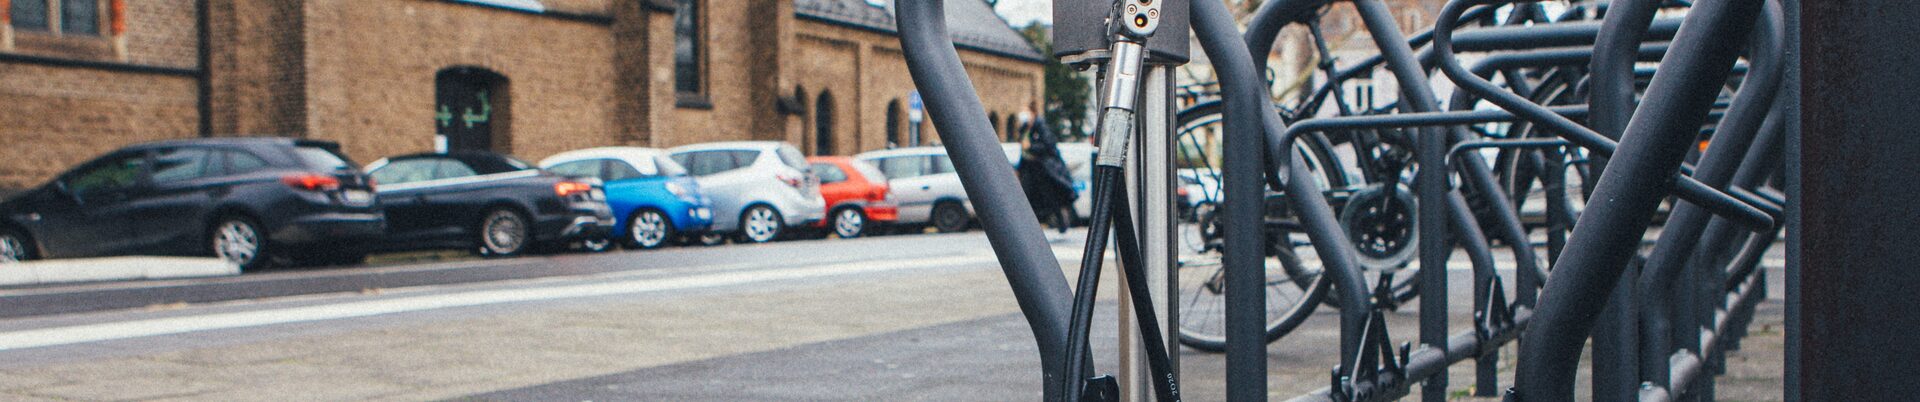 Das Foto zeigt eine Frau mit einem Lastenrad vor einer Fahrrad-Abstellbox.